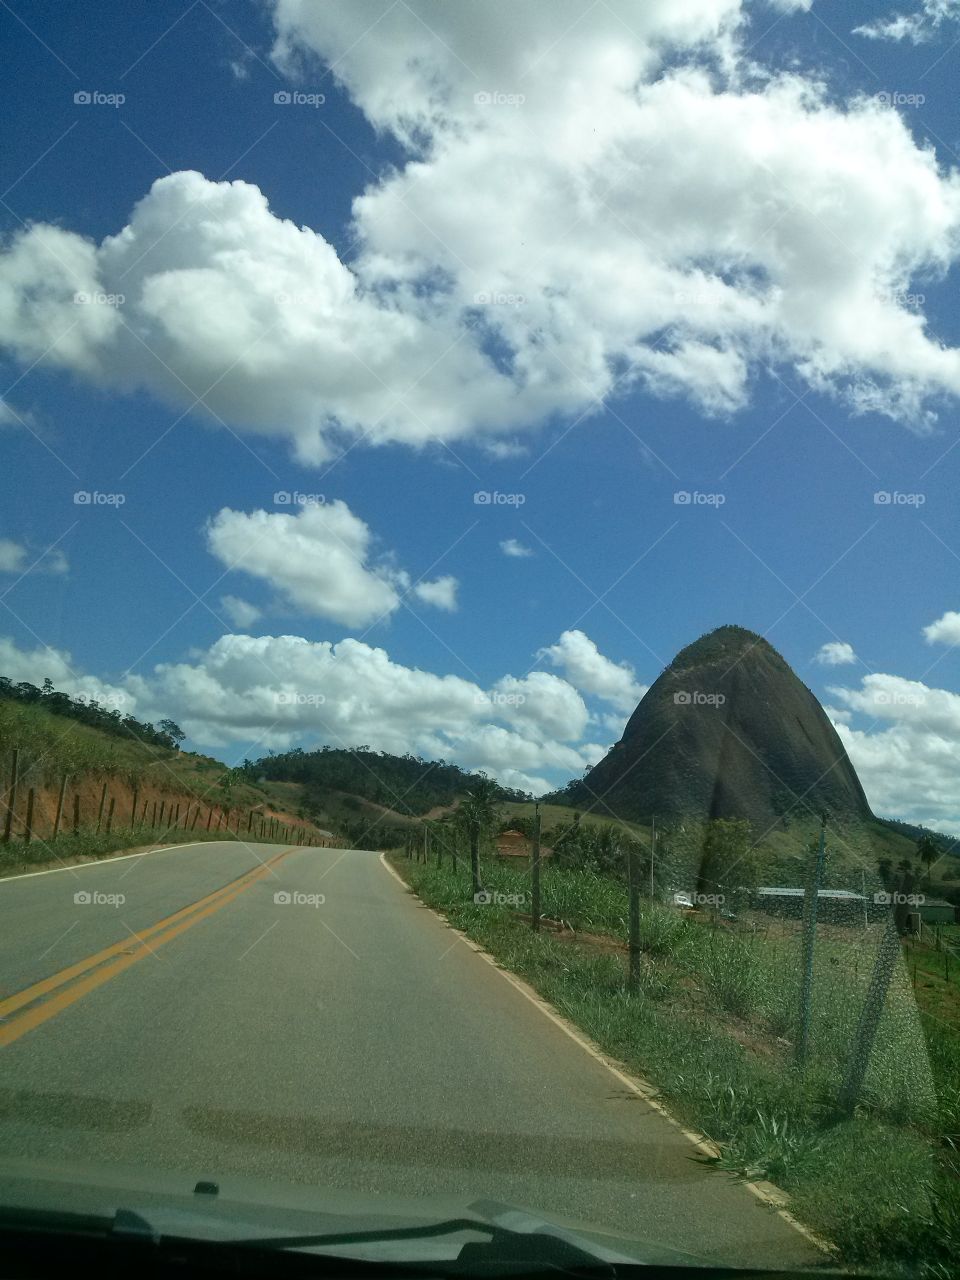 brazil landscape